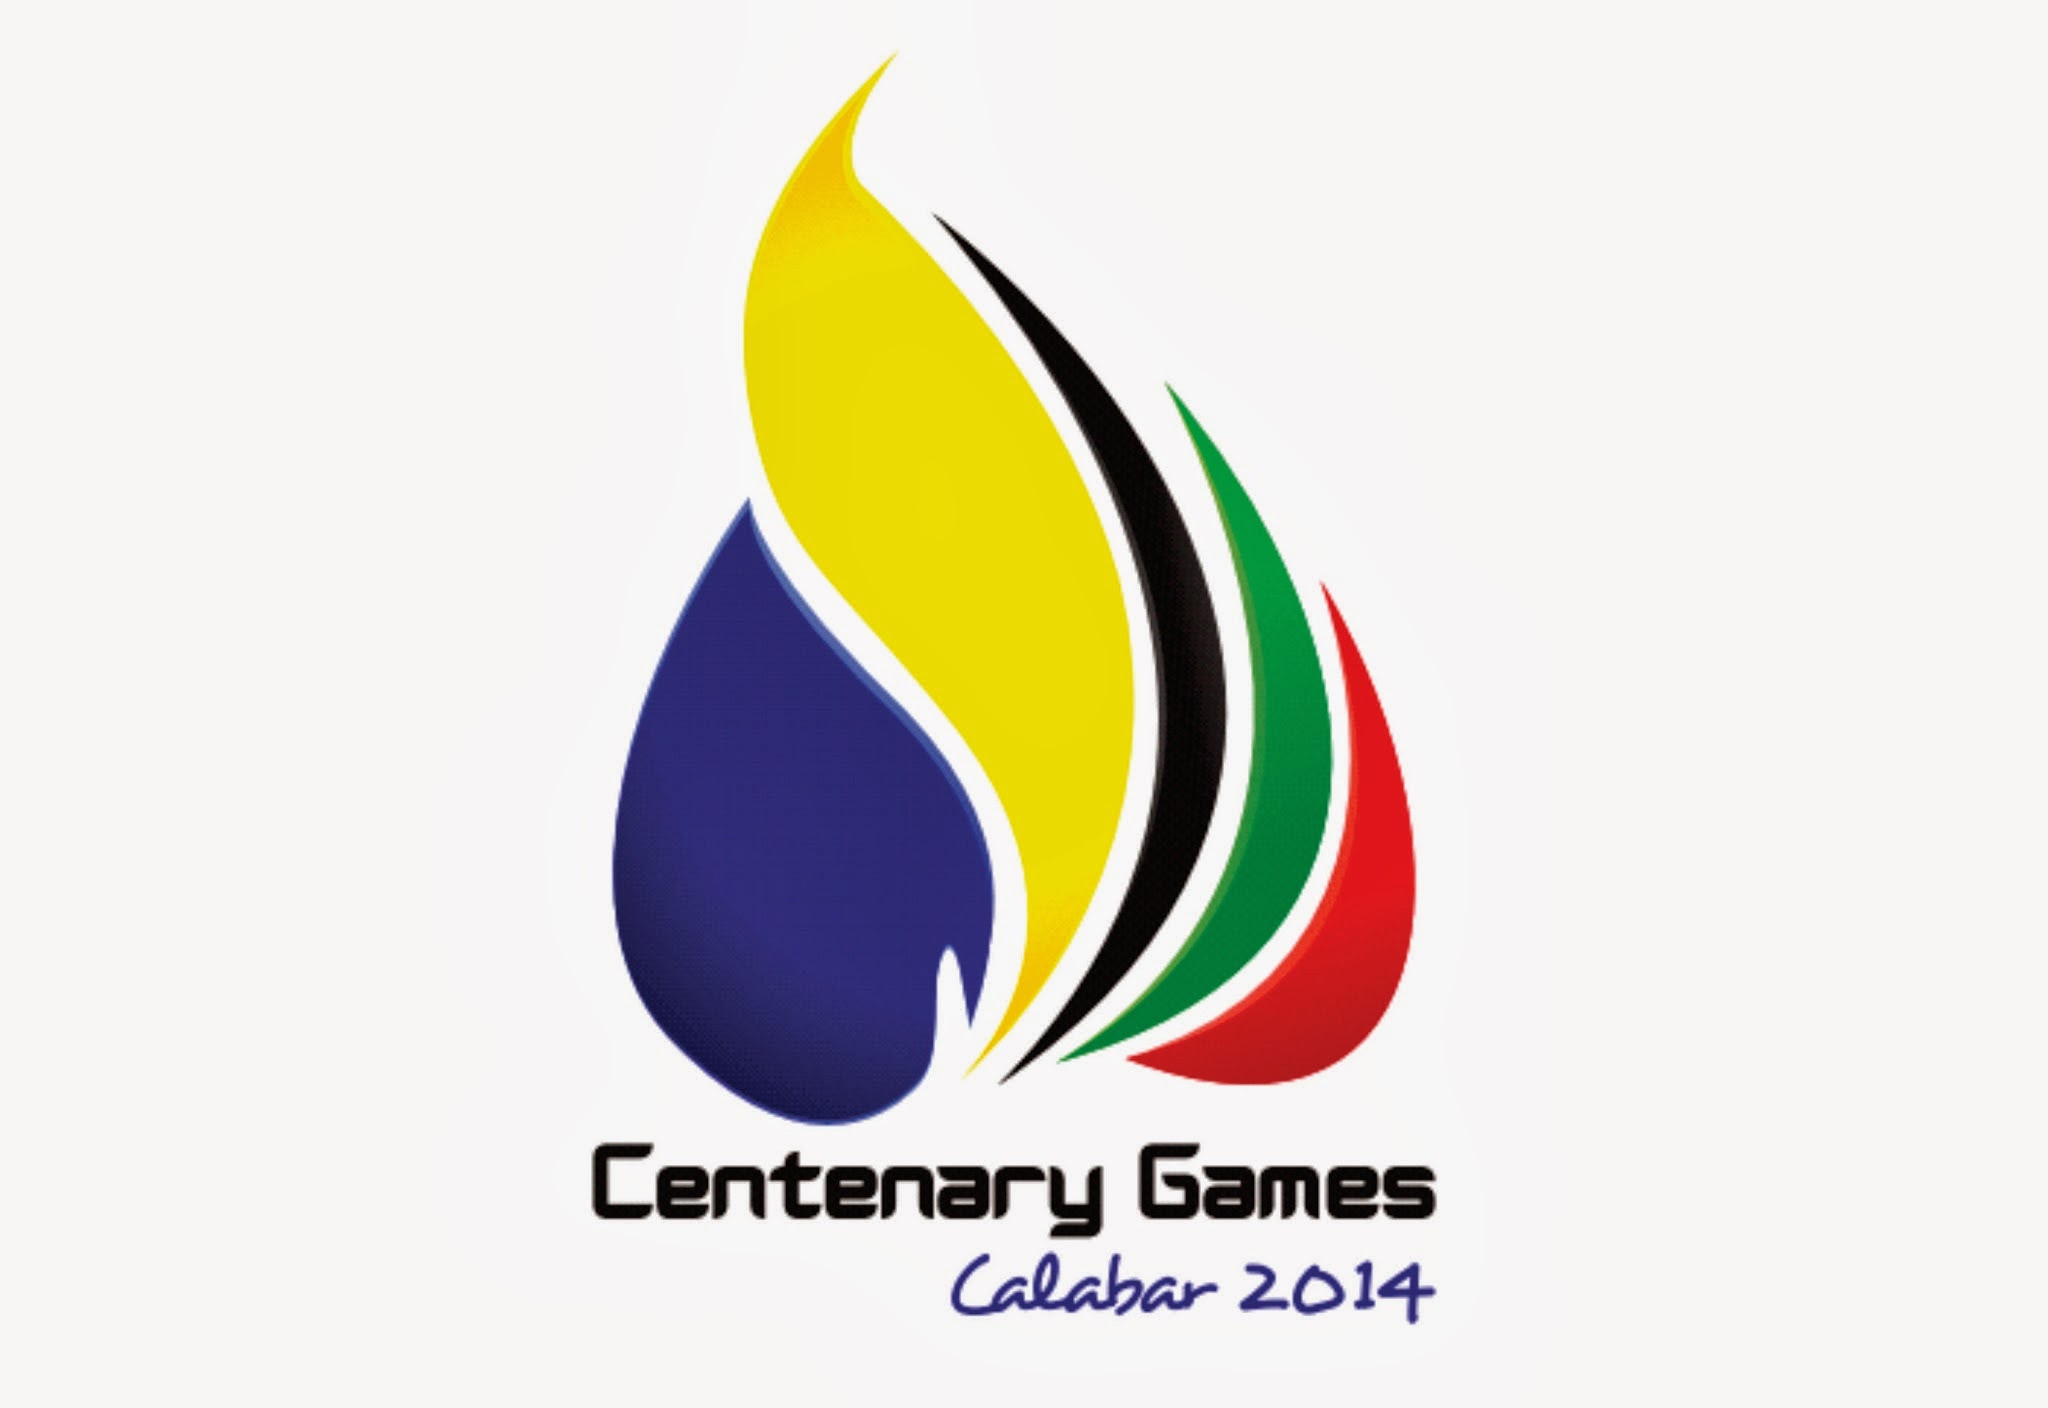 Centenary Games logo